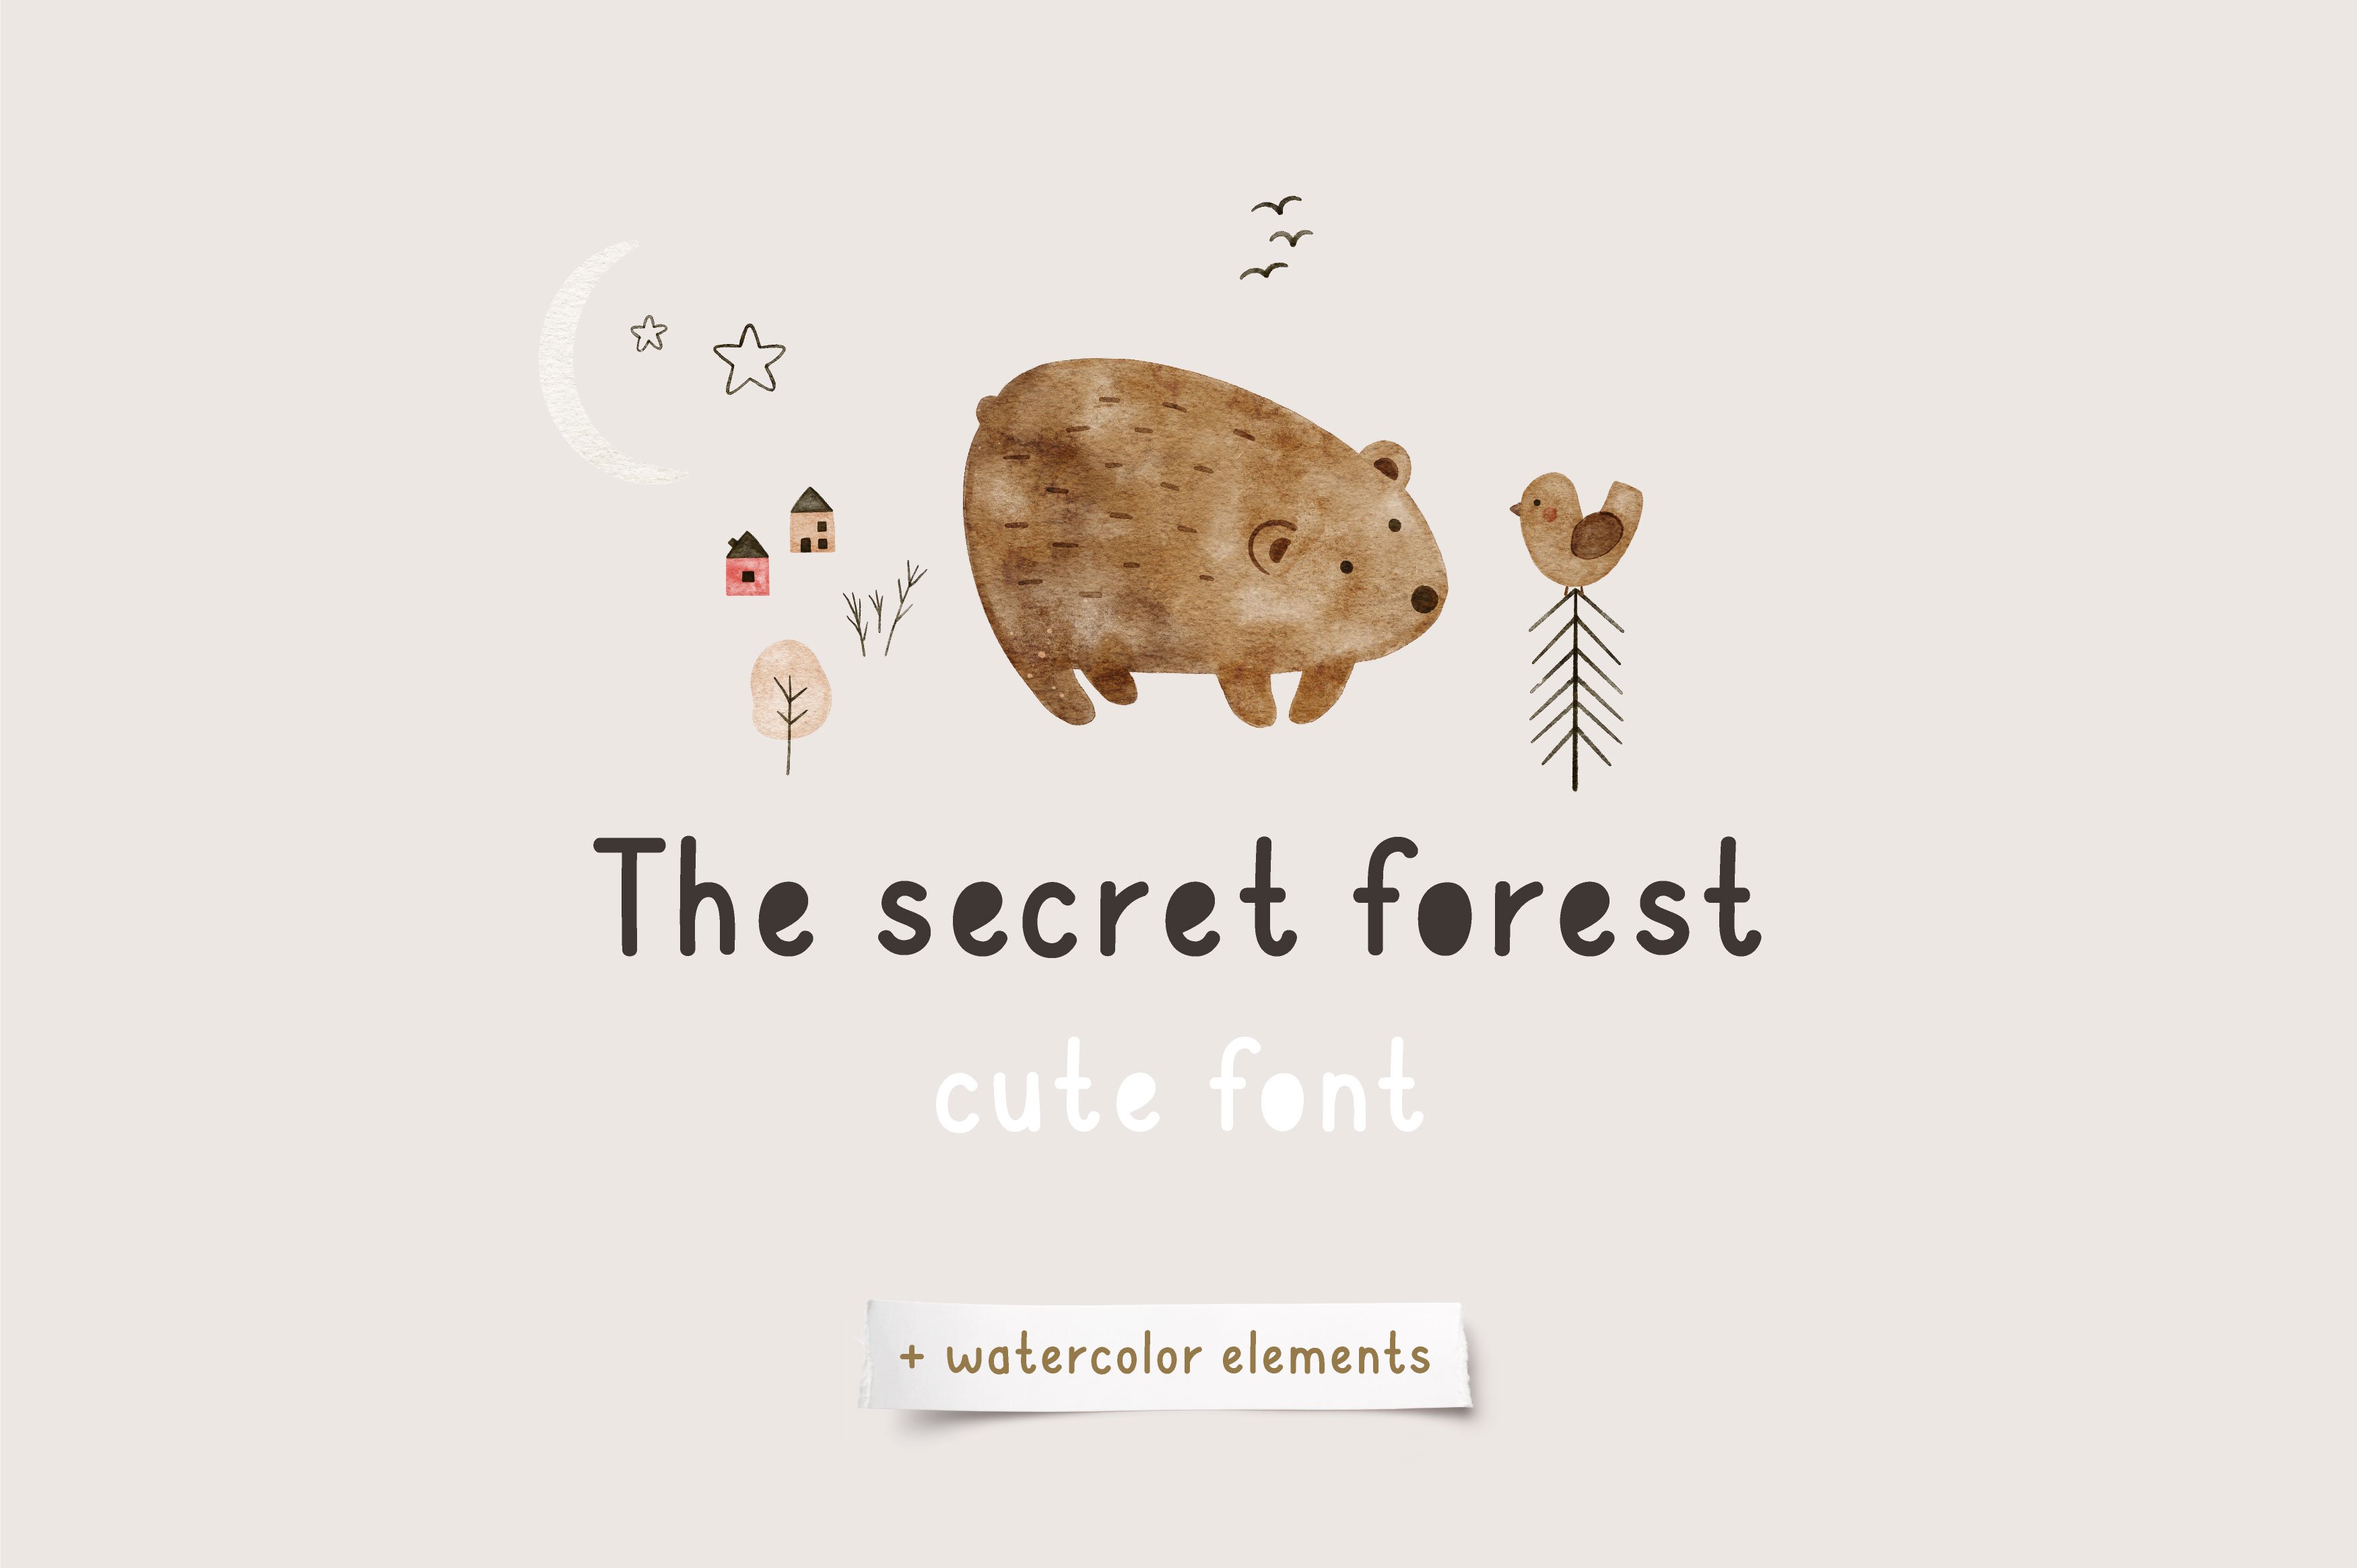 Secret forest | Cute Font cover image.